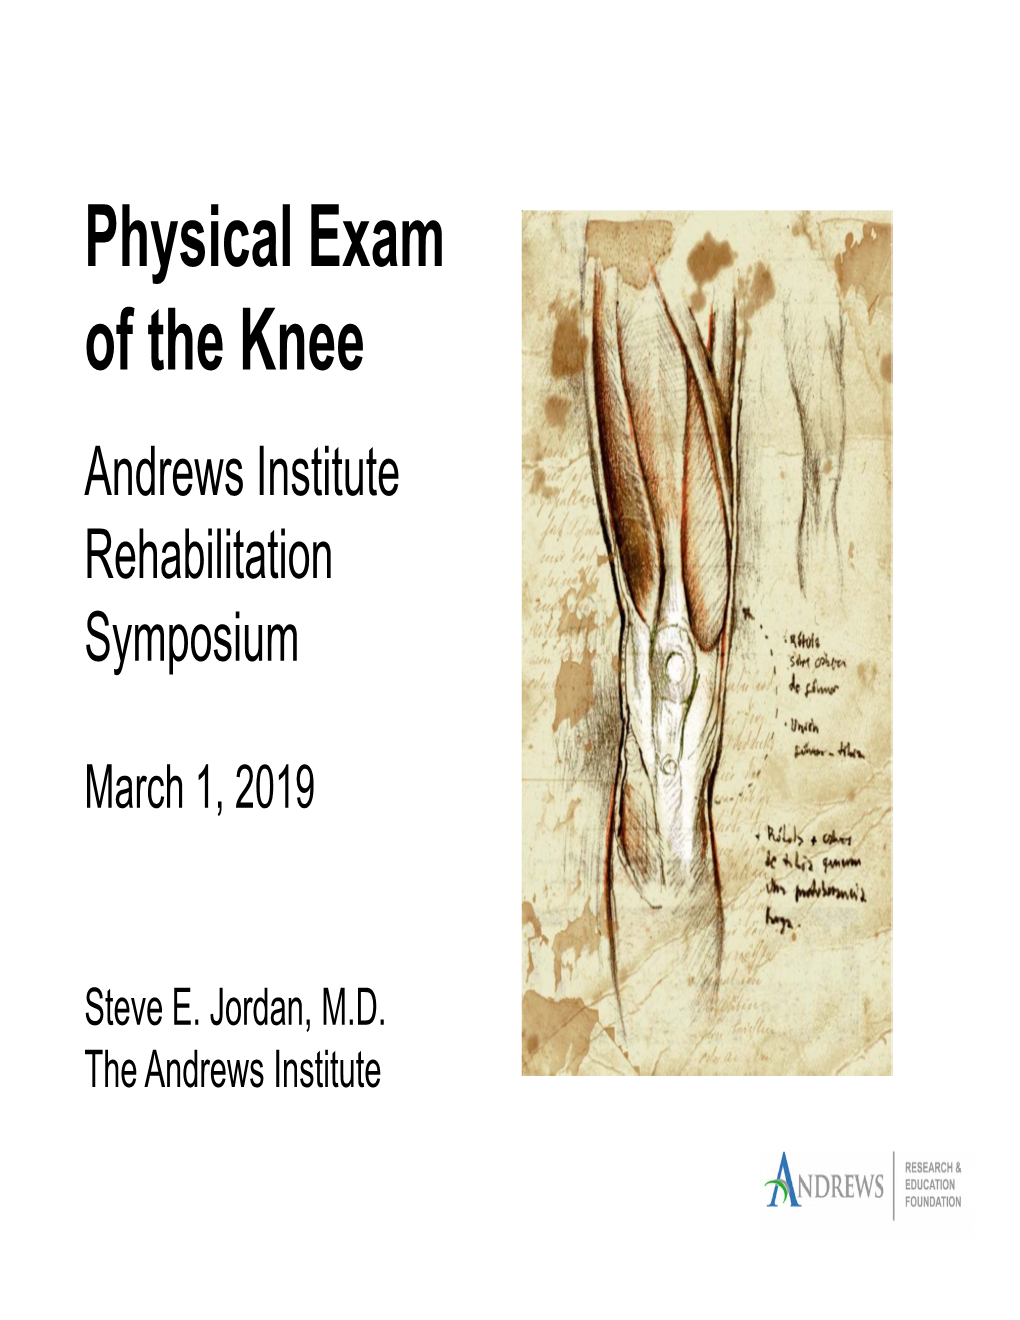 Physical Exam of the Knee Andrews Institute Rehabilitation Symposium